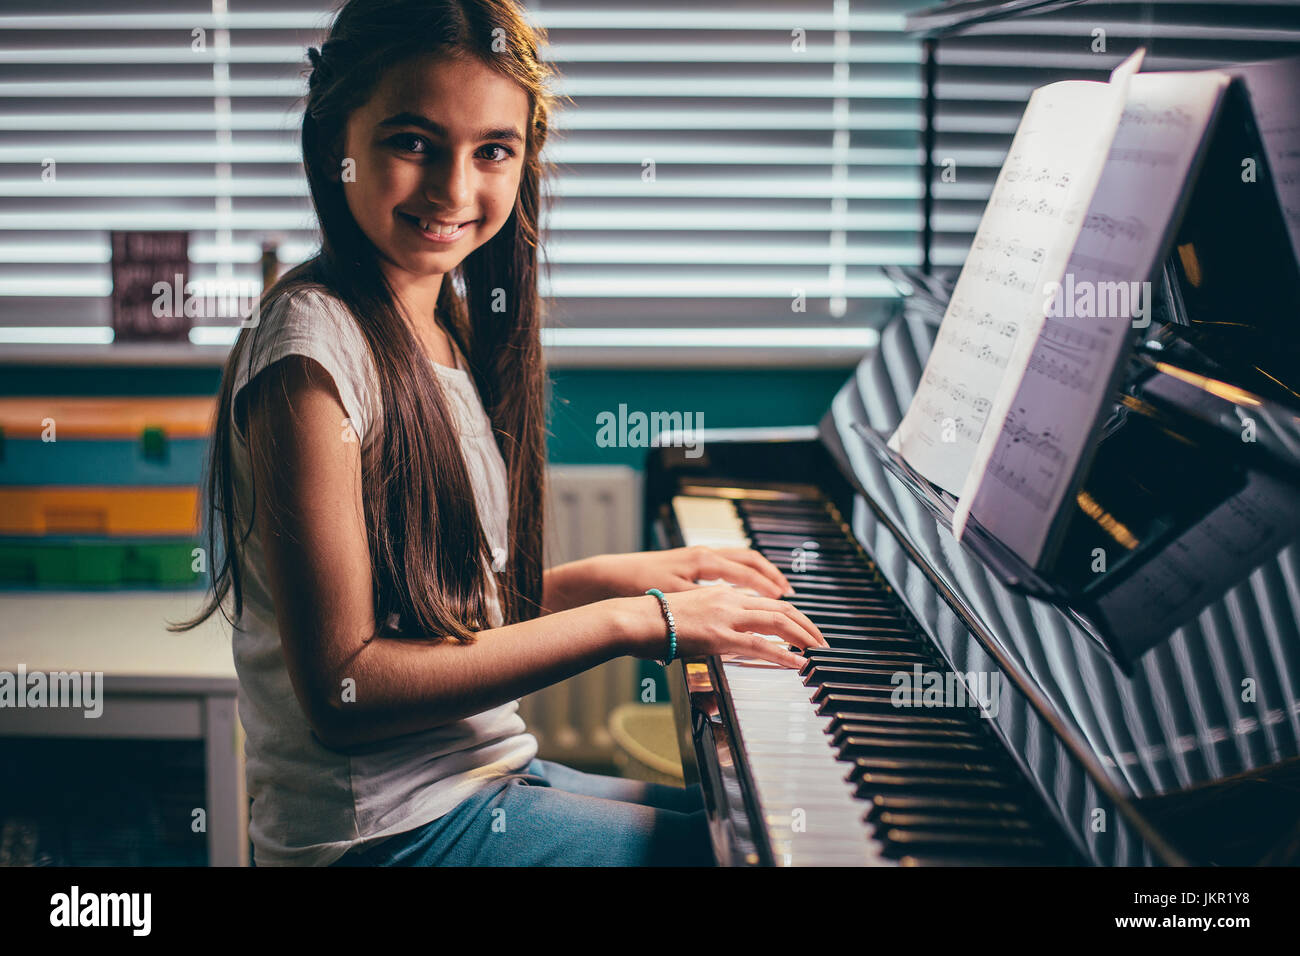 She plays piano immagini e fotografie stock ad alta risoluzione - Alamy